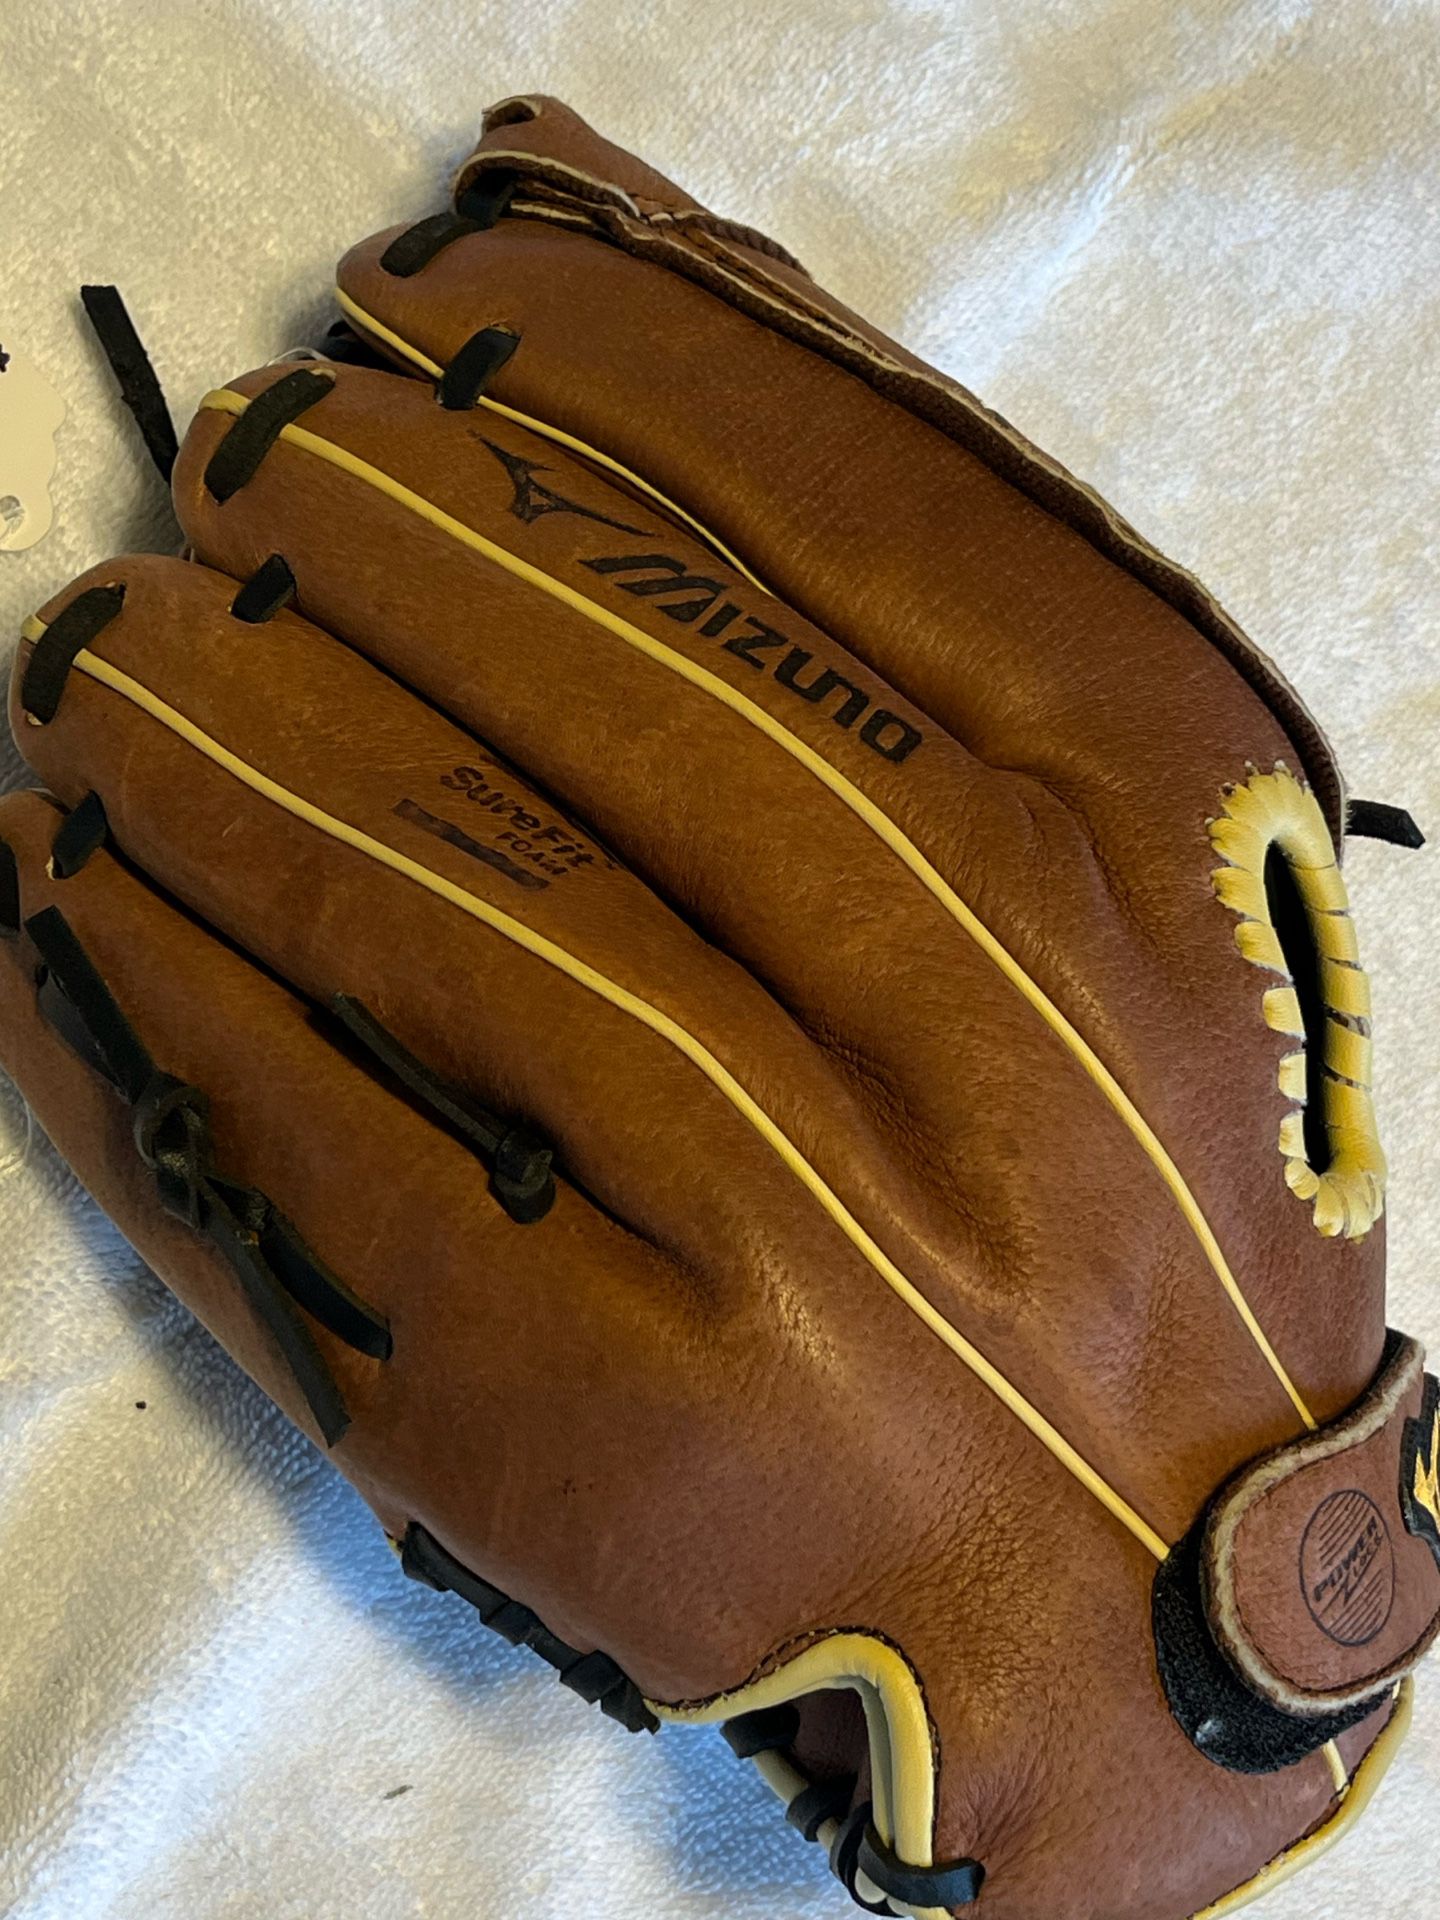 Mizuno 11.5” Youth Baseball Glove